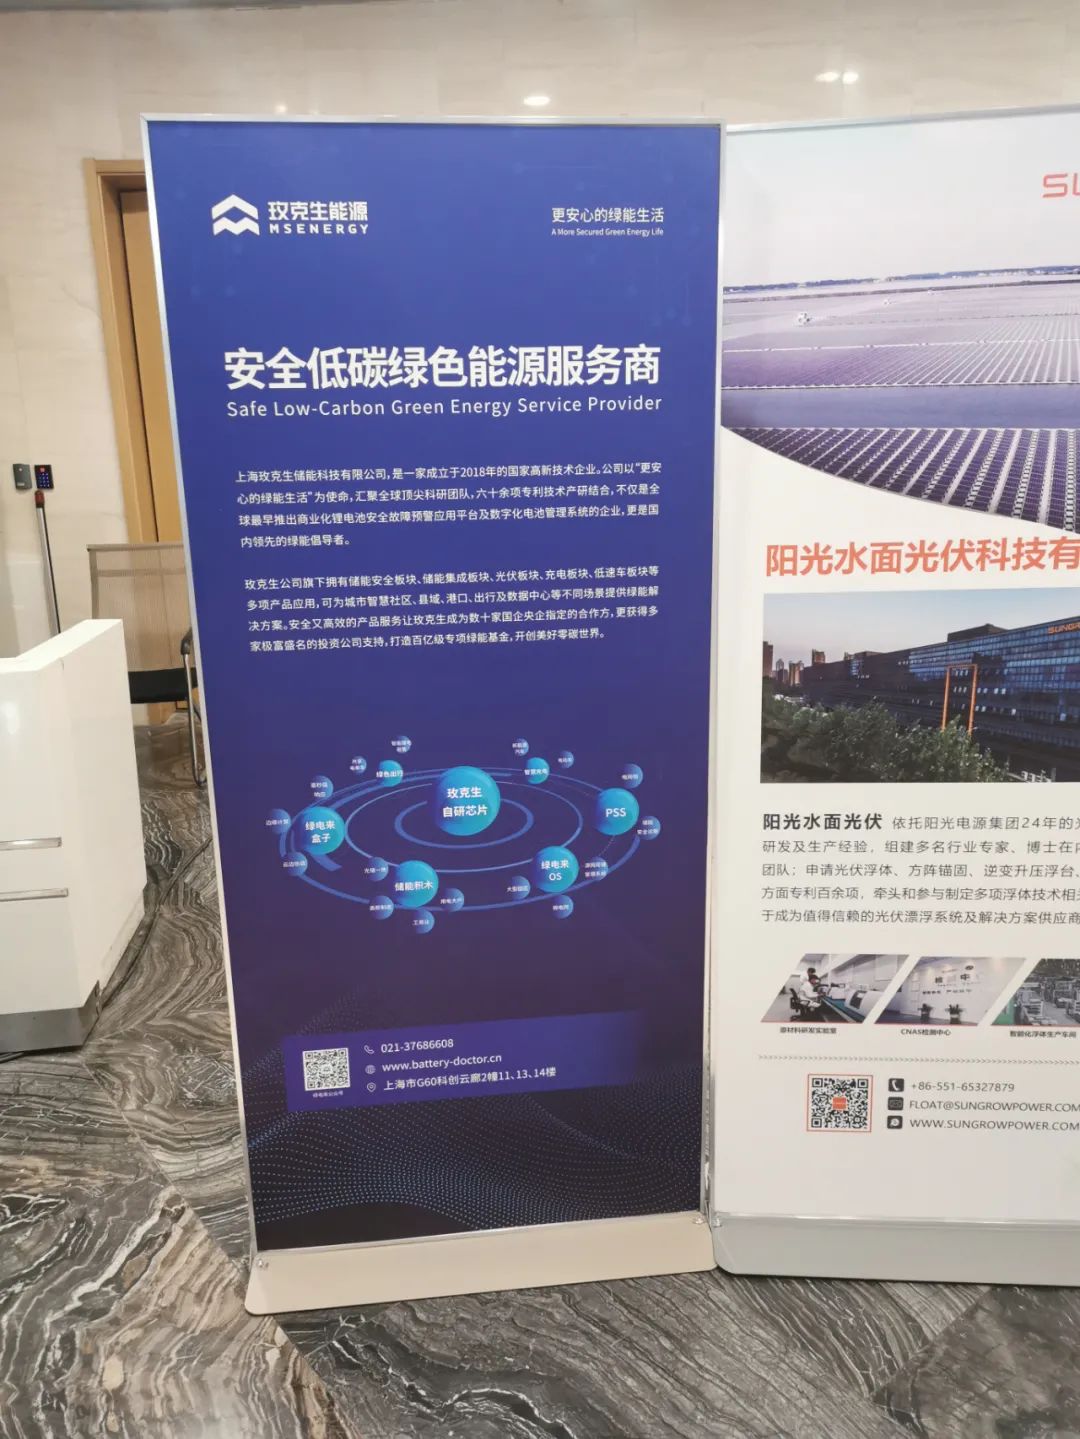 第十五leyu70vip届中国新能源国际博览会暨高峰论坛成功举办玫克生能源在线话安全